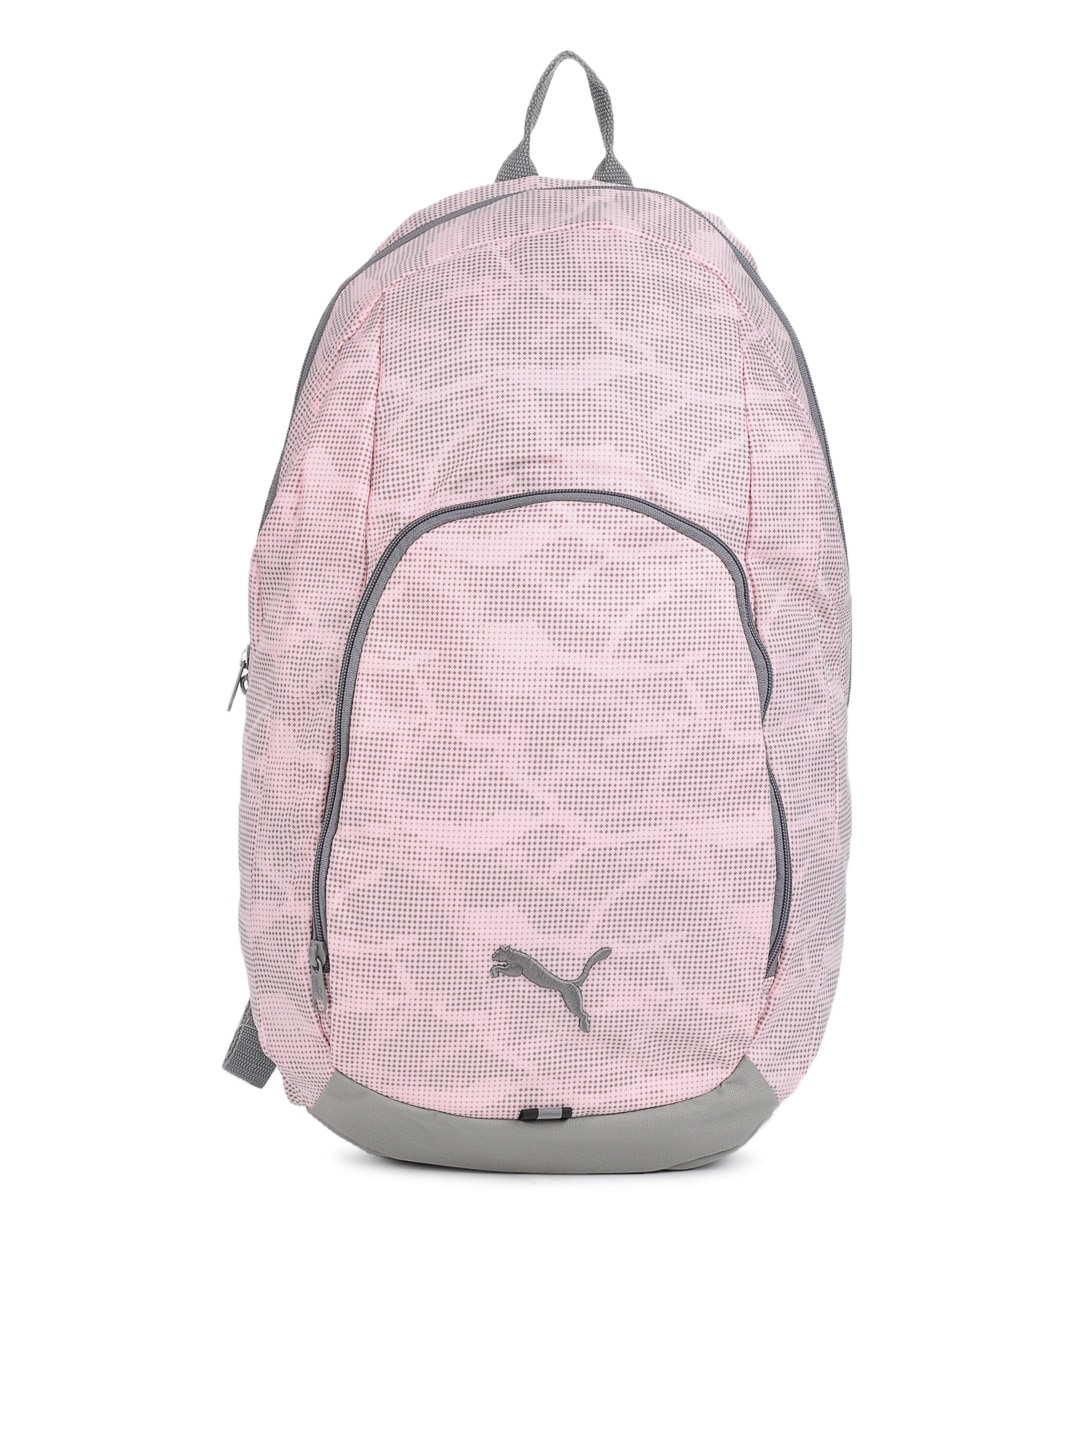 Puma Pink Backpack